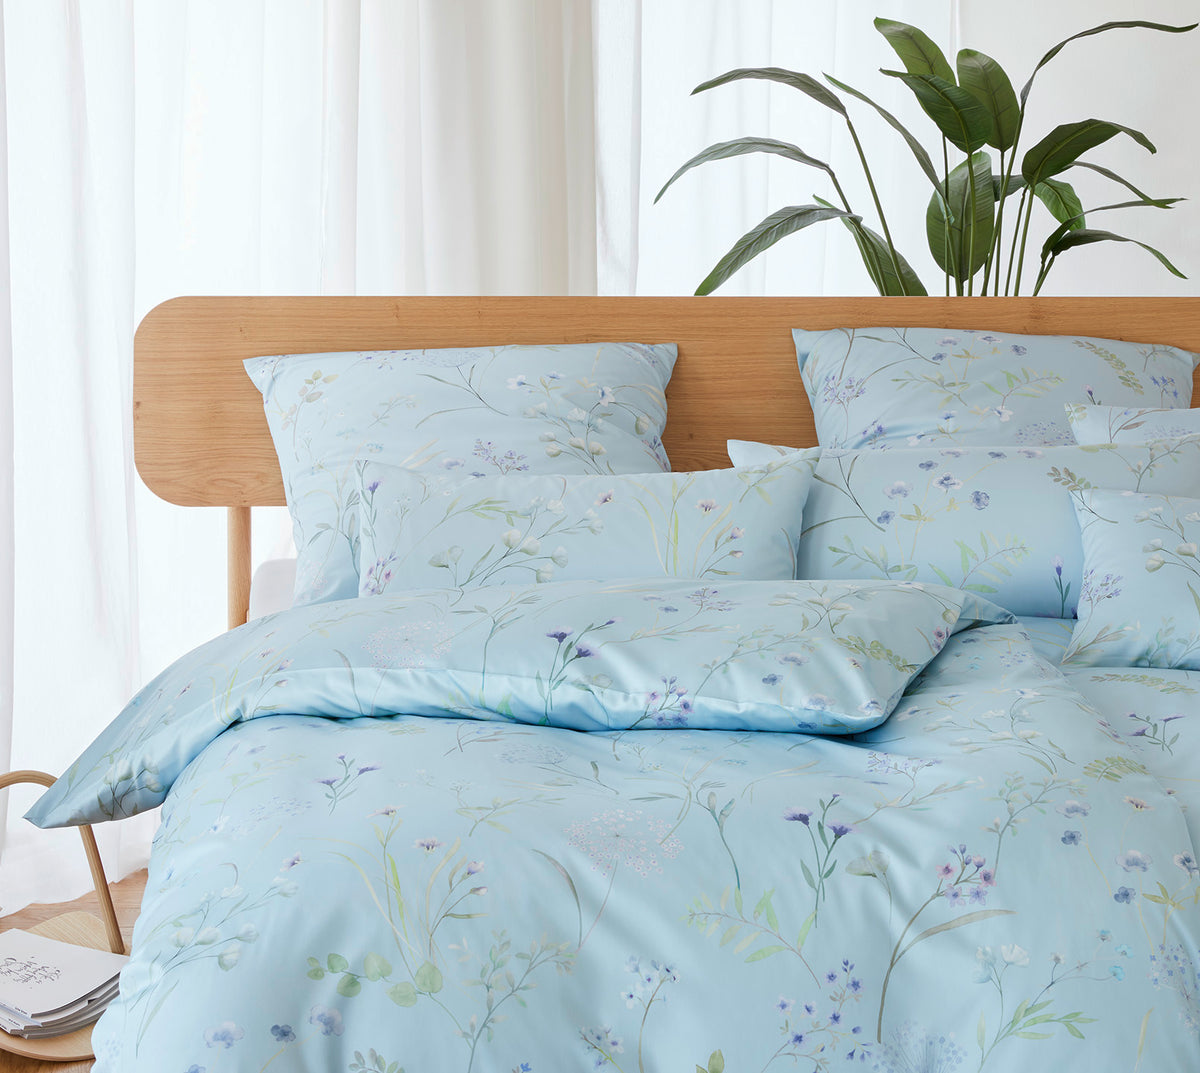 Seiden Satin Bettwaesche Deluxe in Rauchblau Blumen Schlafzimmer #farbe_Rauchblau